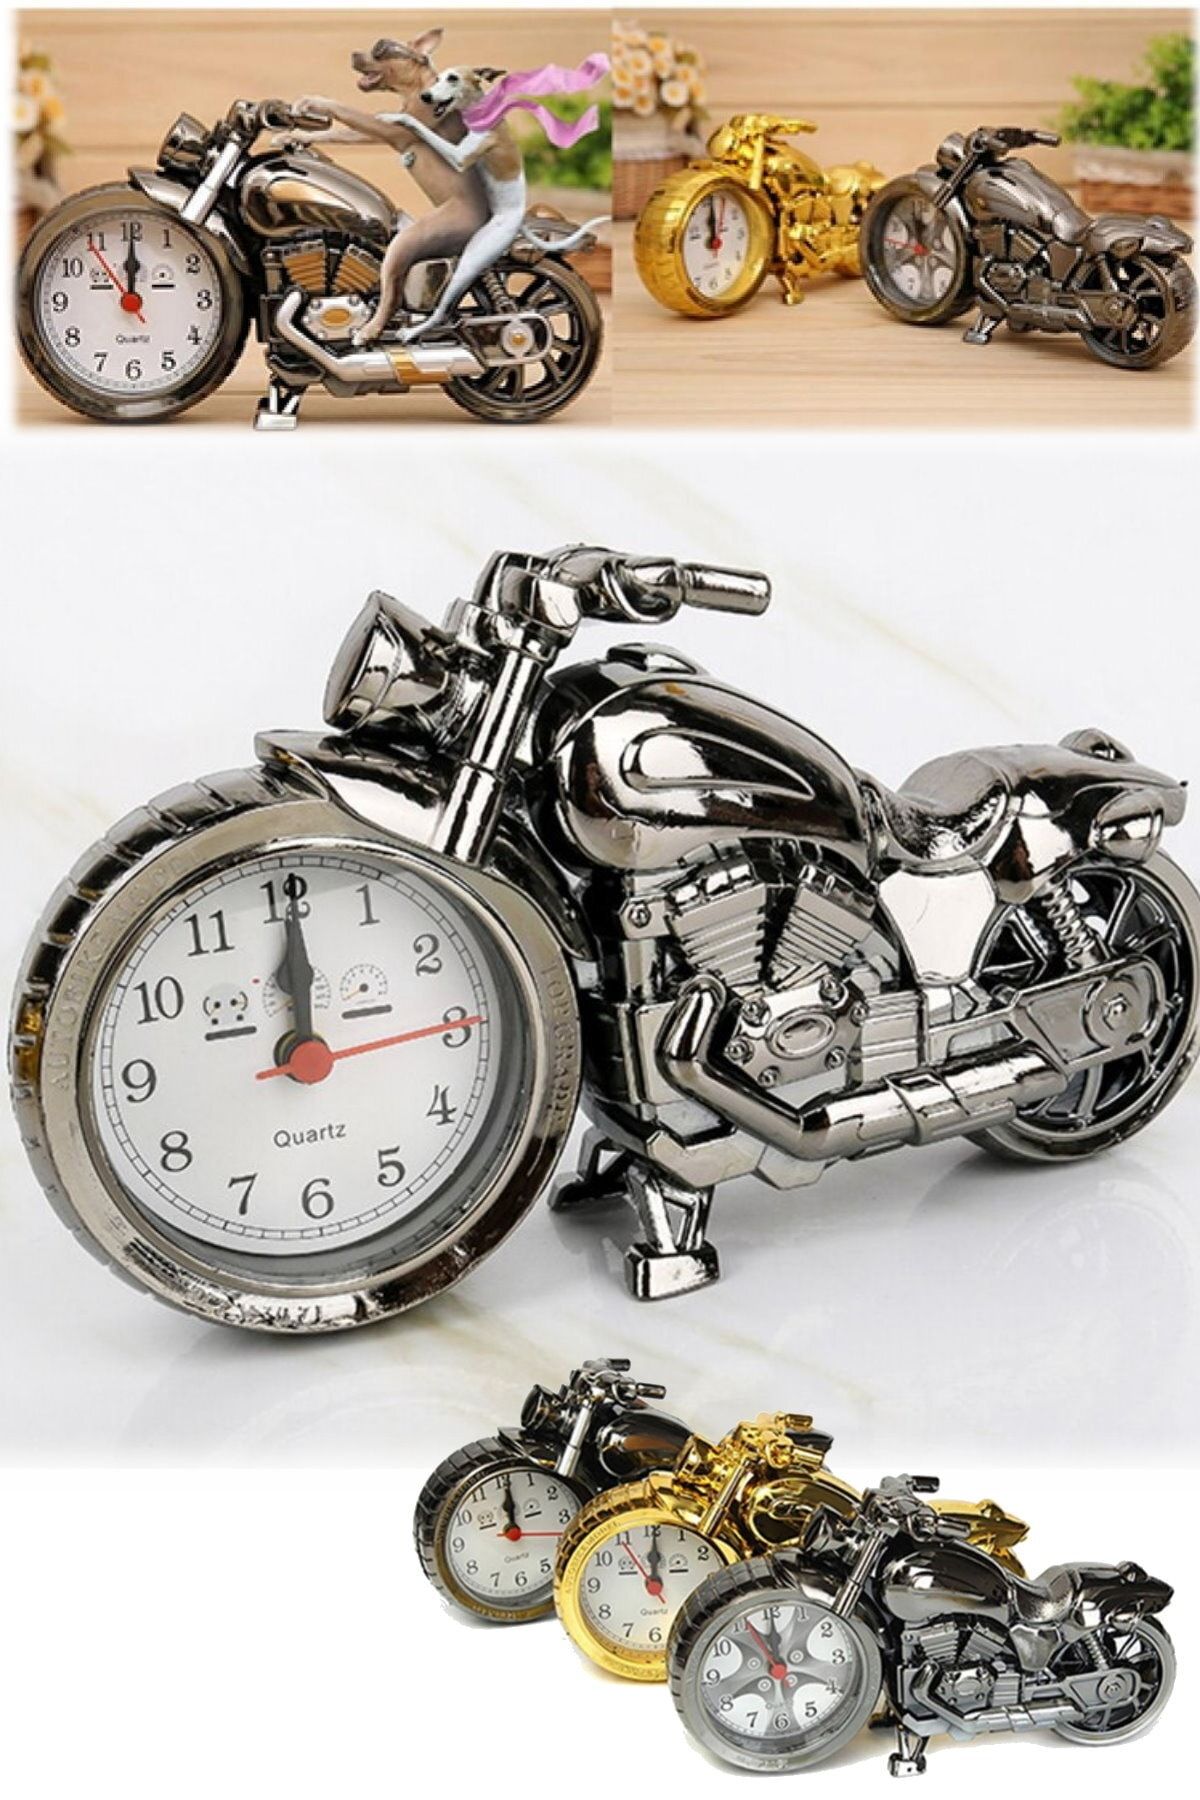 Utelips Retro Yaratıcı Biblo Ve Saat Şık Tasarım Kaliteli Dekoratif Chopper Masaüstü Saat